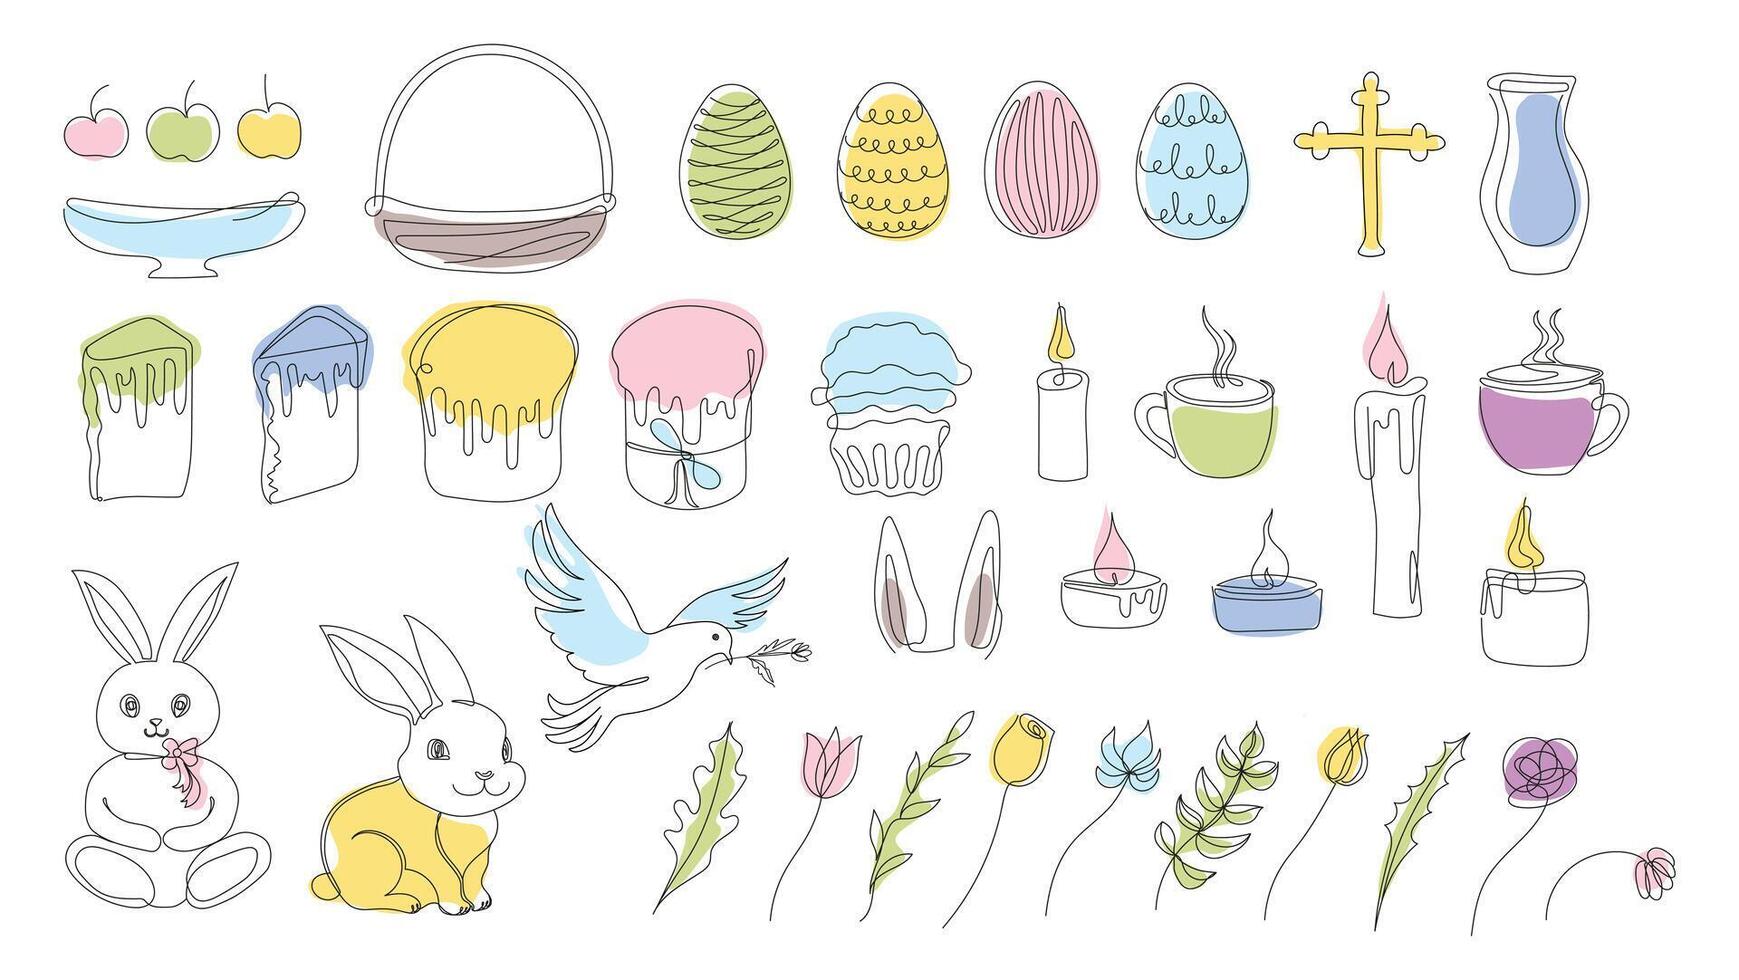 påsk uppsättning i kontinuerlig ett linje stil med design element tycka om kanin, ägg, duva, ljus, korsa, påsk kakor, muggar, blommor. färgrik vektor på vit. ClipArt. för hälsning kort, textil, skriva ut